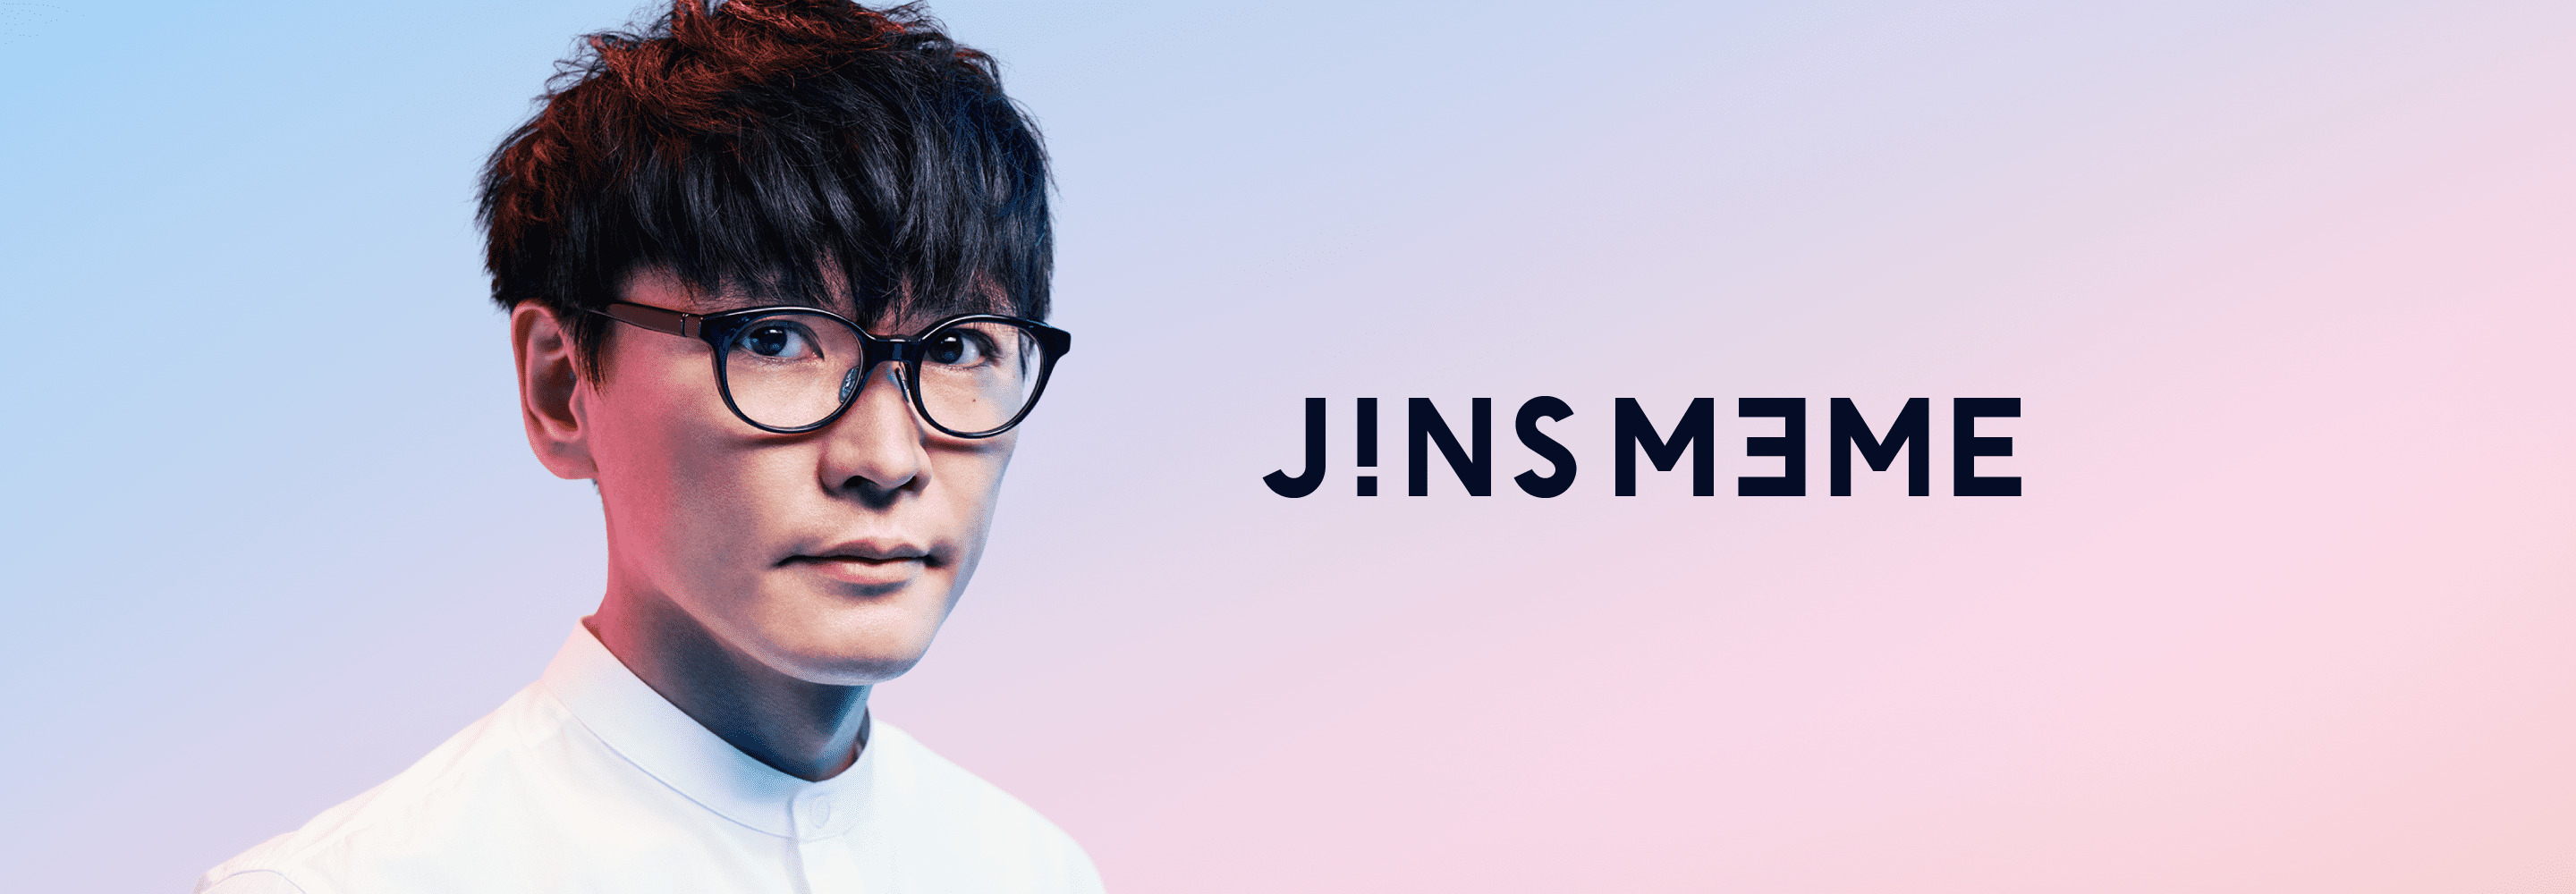 JINS MEME Commercial & Web